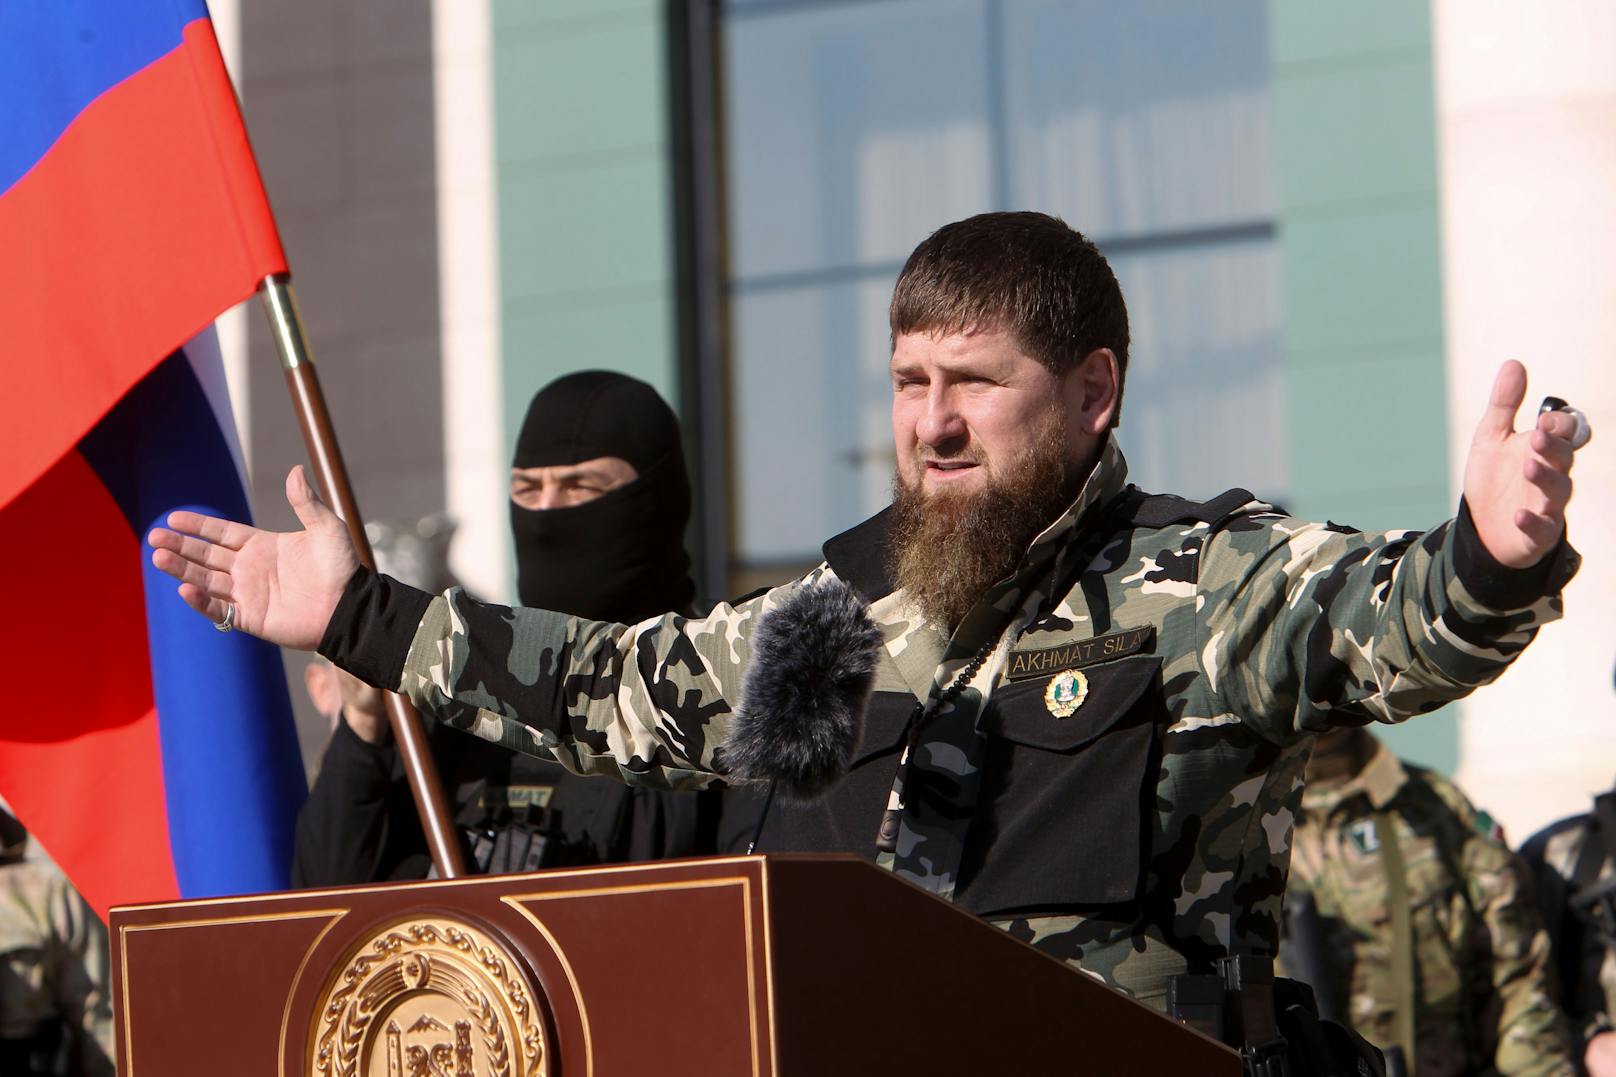 Bedenkliche Gerüchte: "Putins Bluthund" Kadyrow im Koma